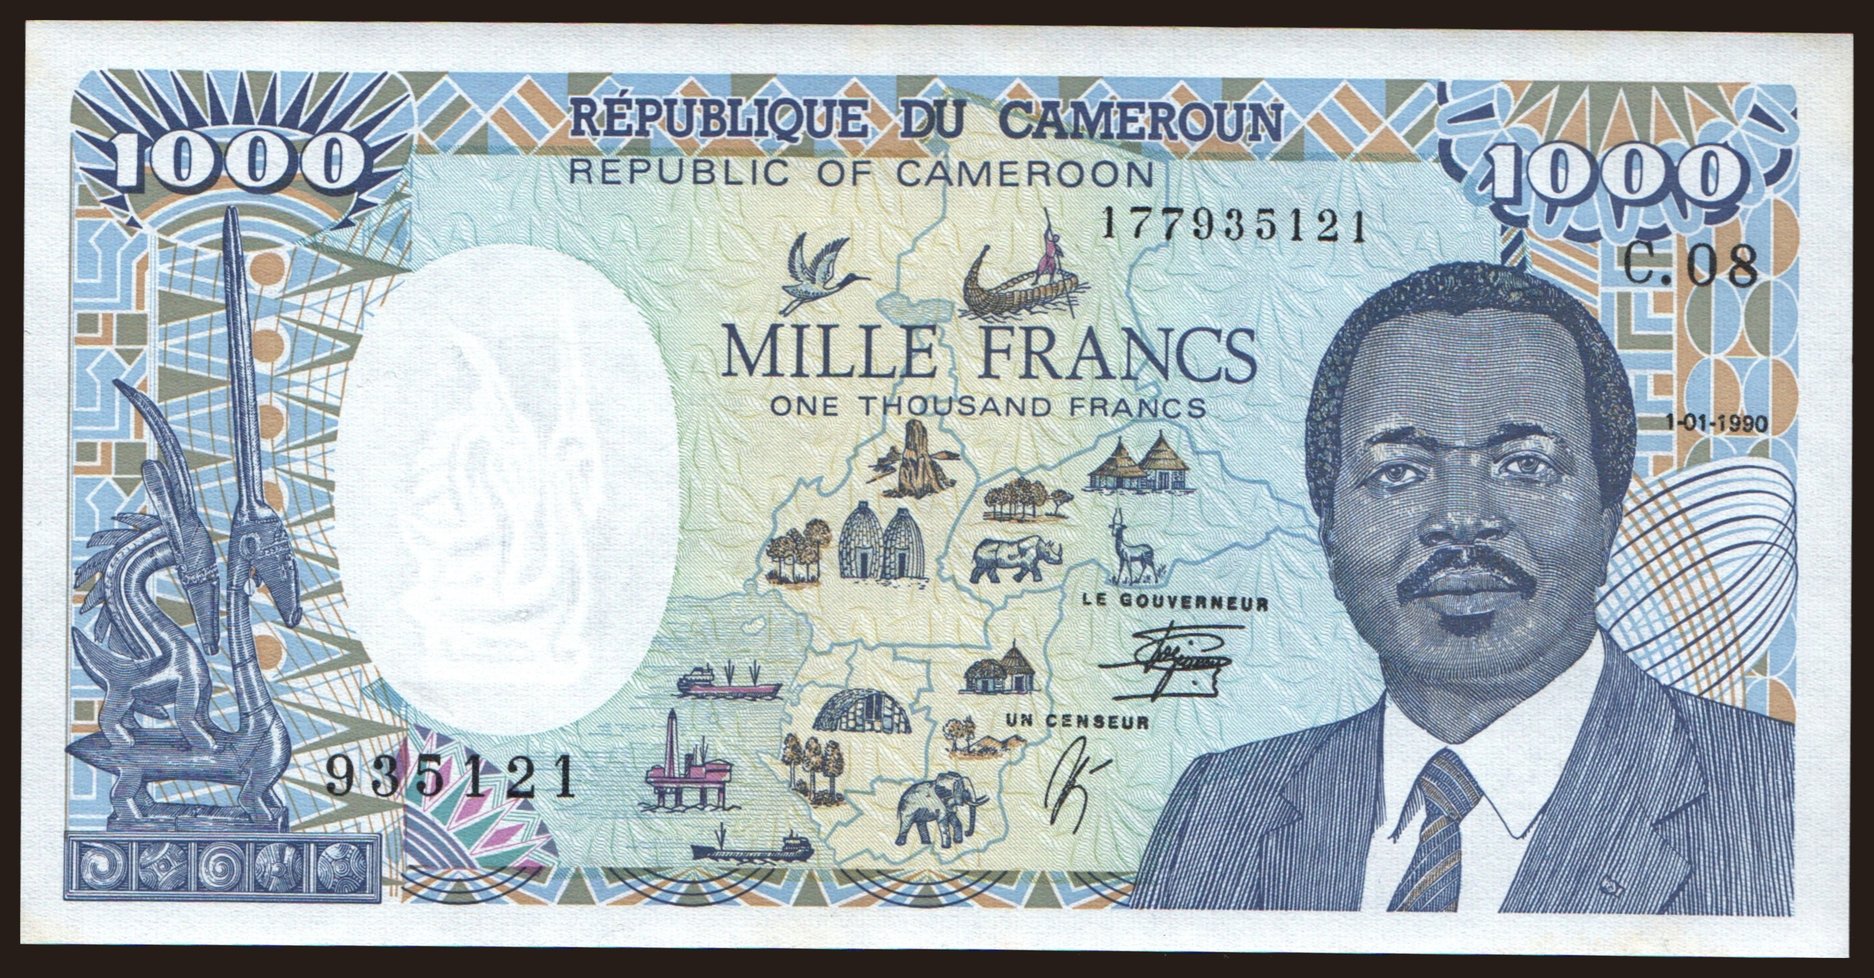 1000 francs, 1990